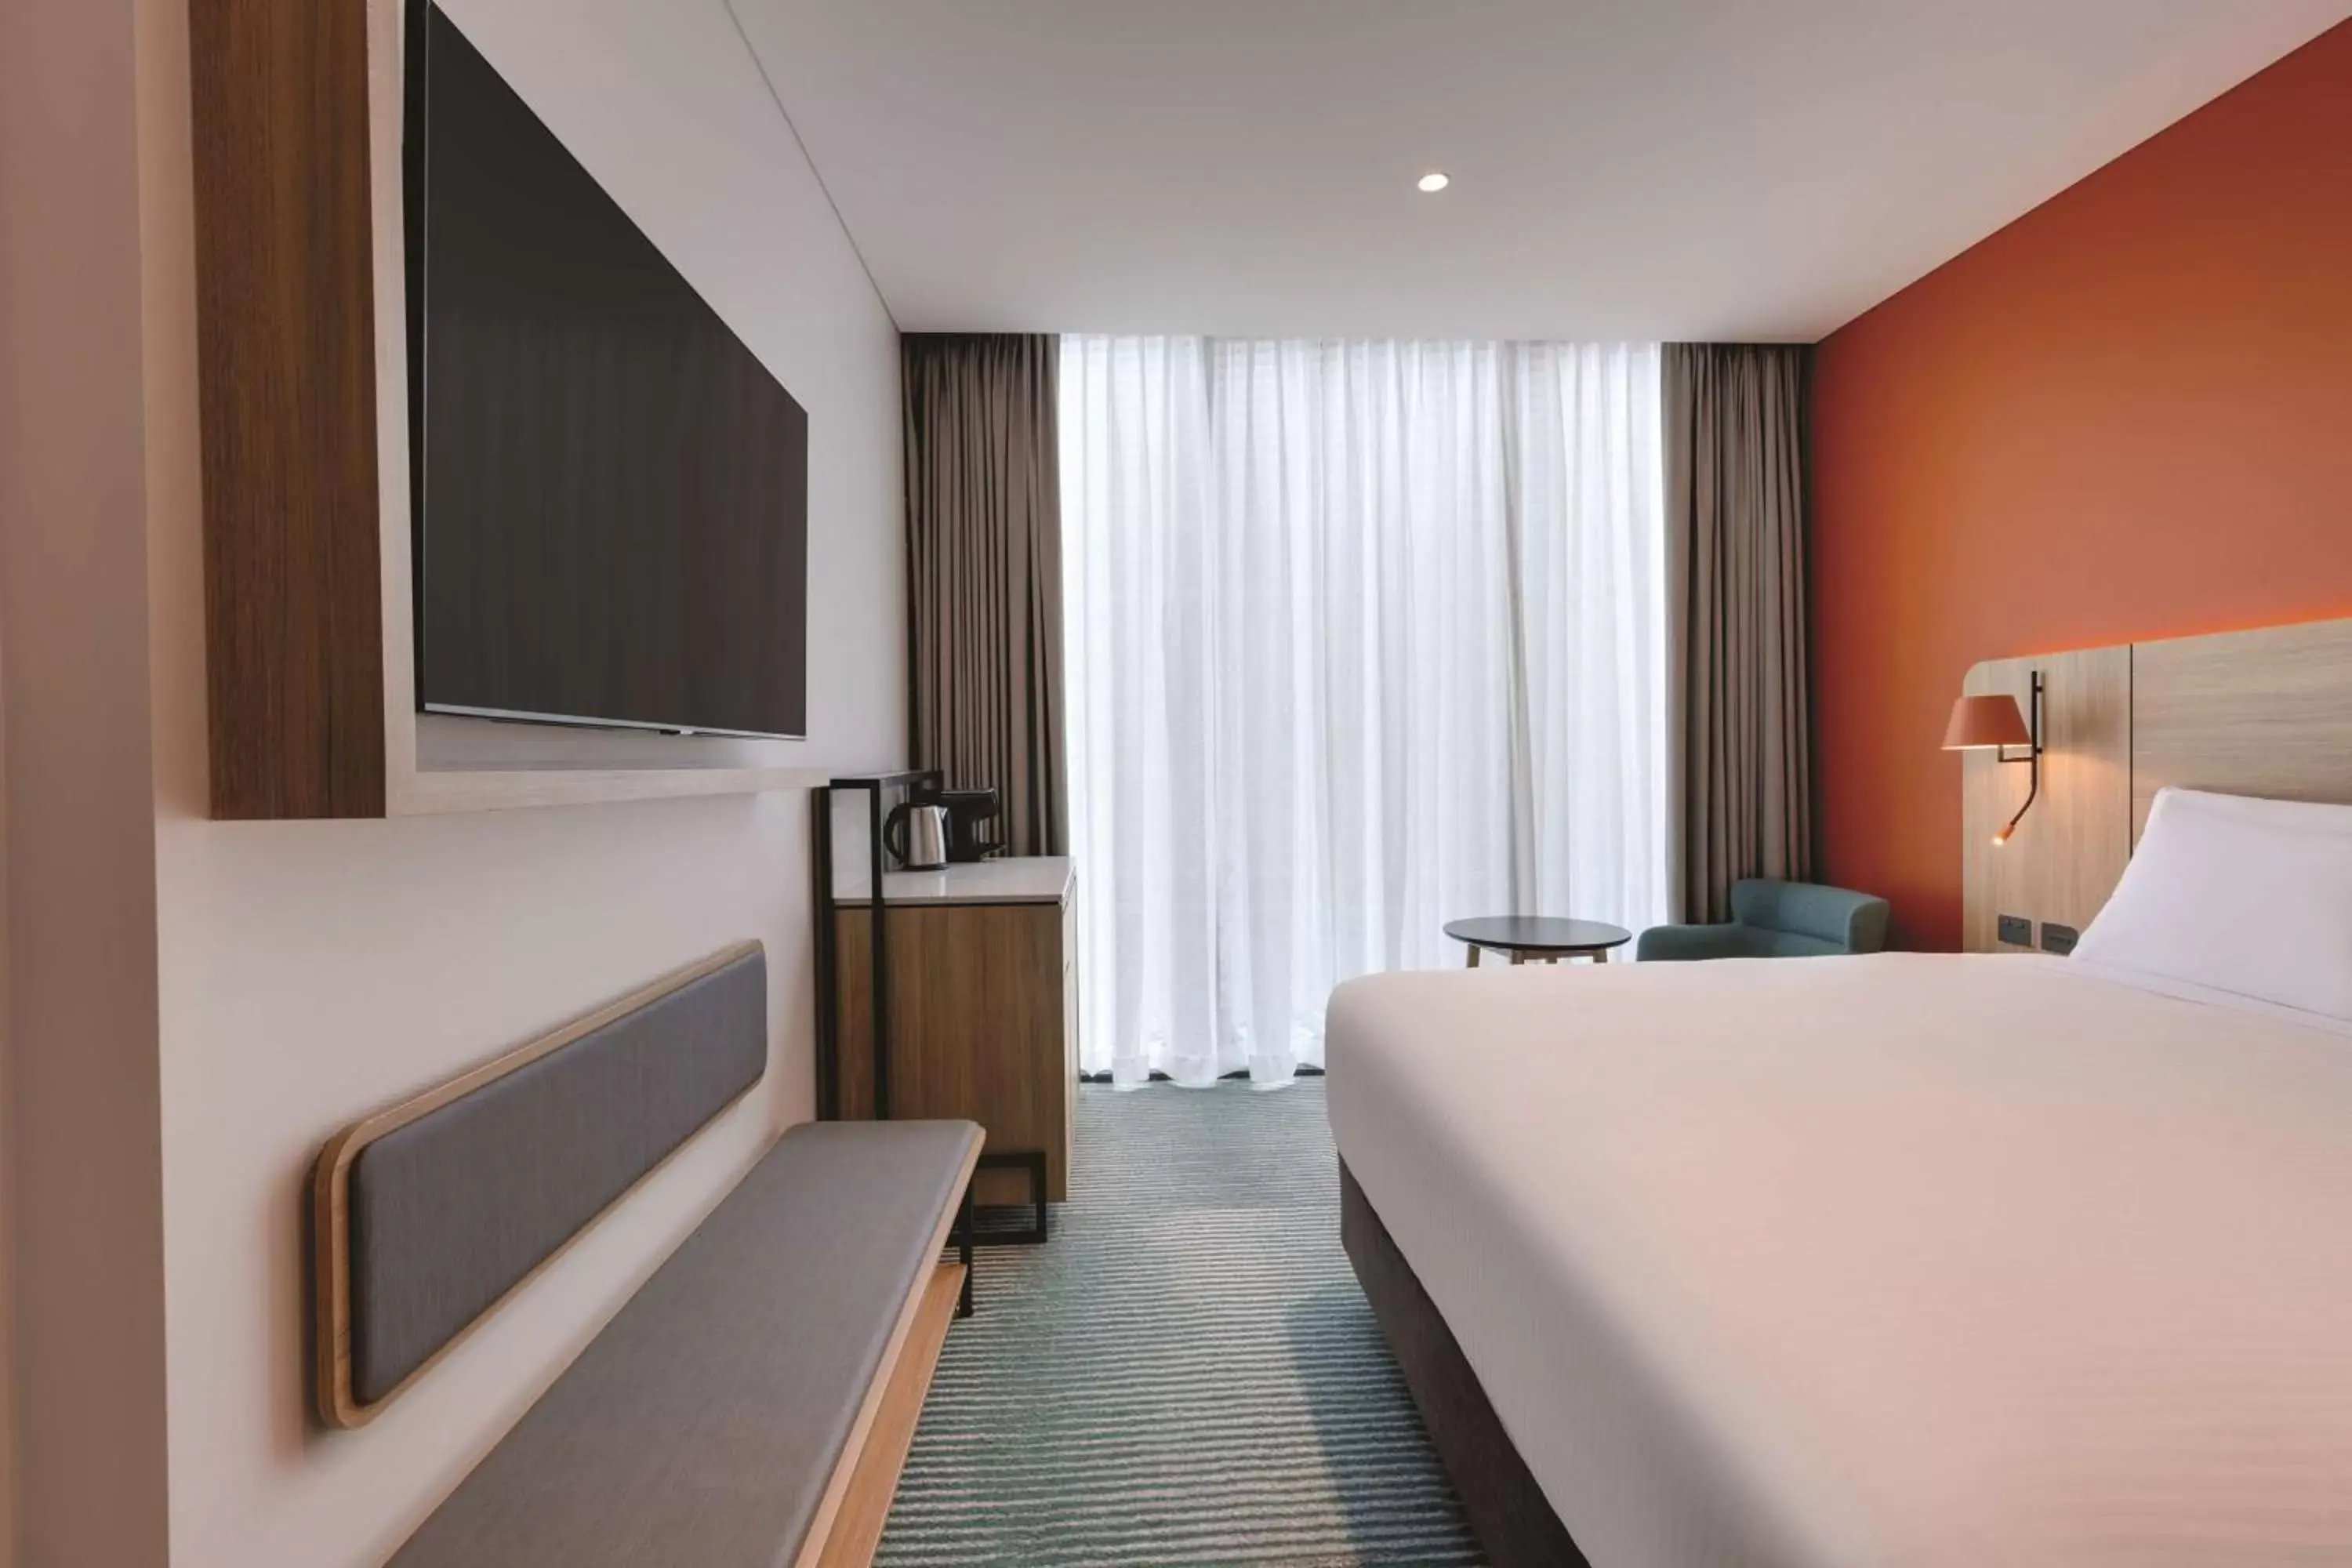 Bedroom, TV/Entertainment Center in Travelodge Hotel Hurstville Sydney